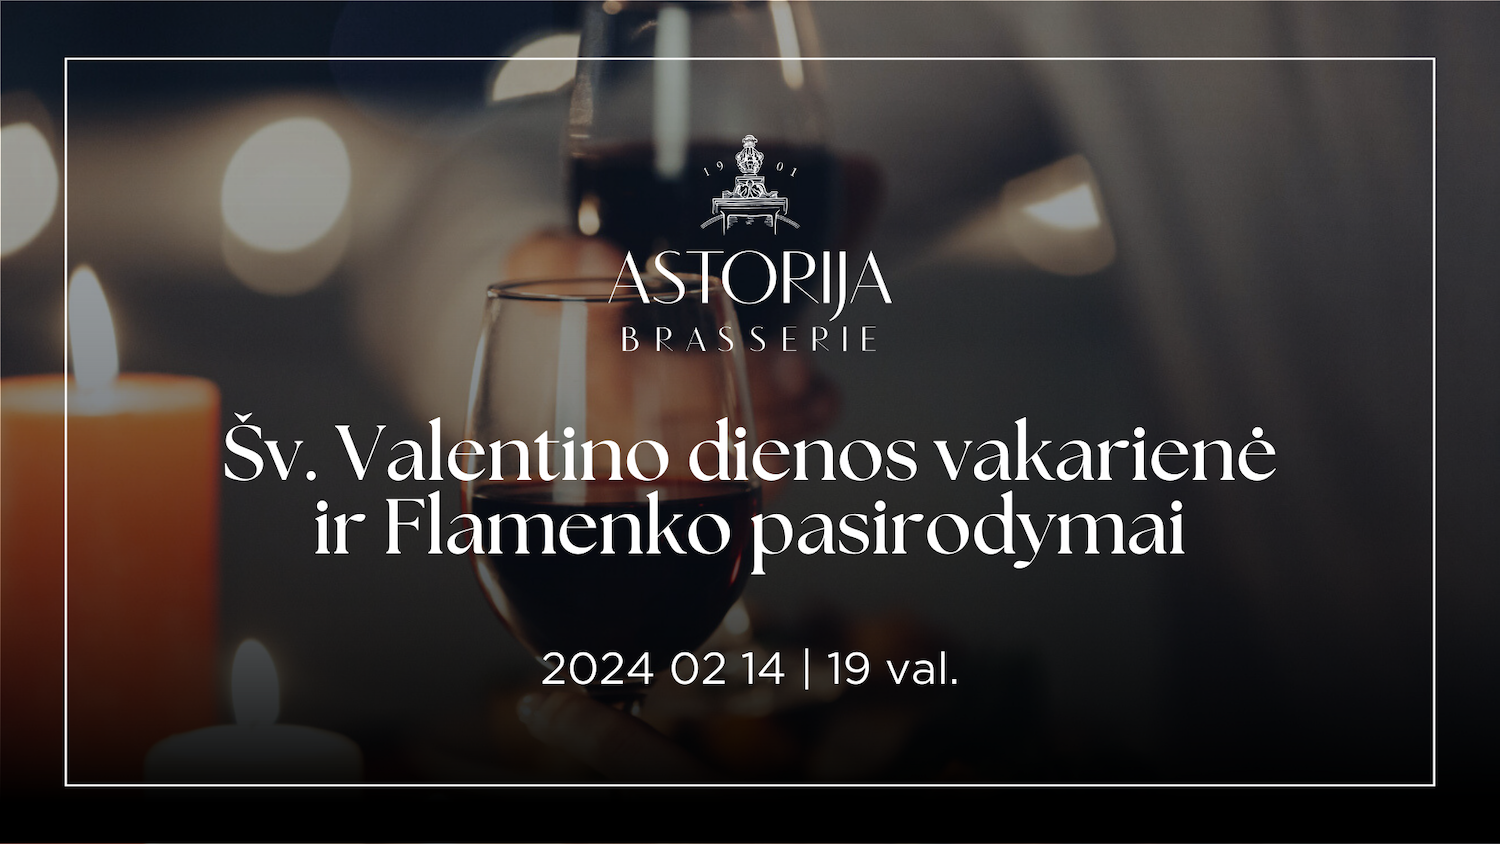 Astorija Brasserie & Bar - Valentino dienos renginiai Vilniuje 